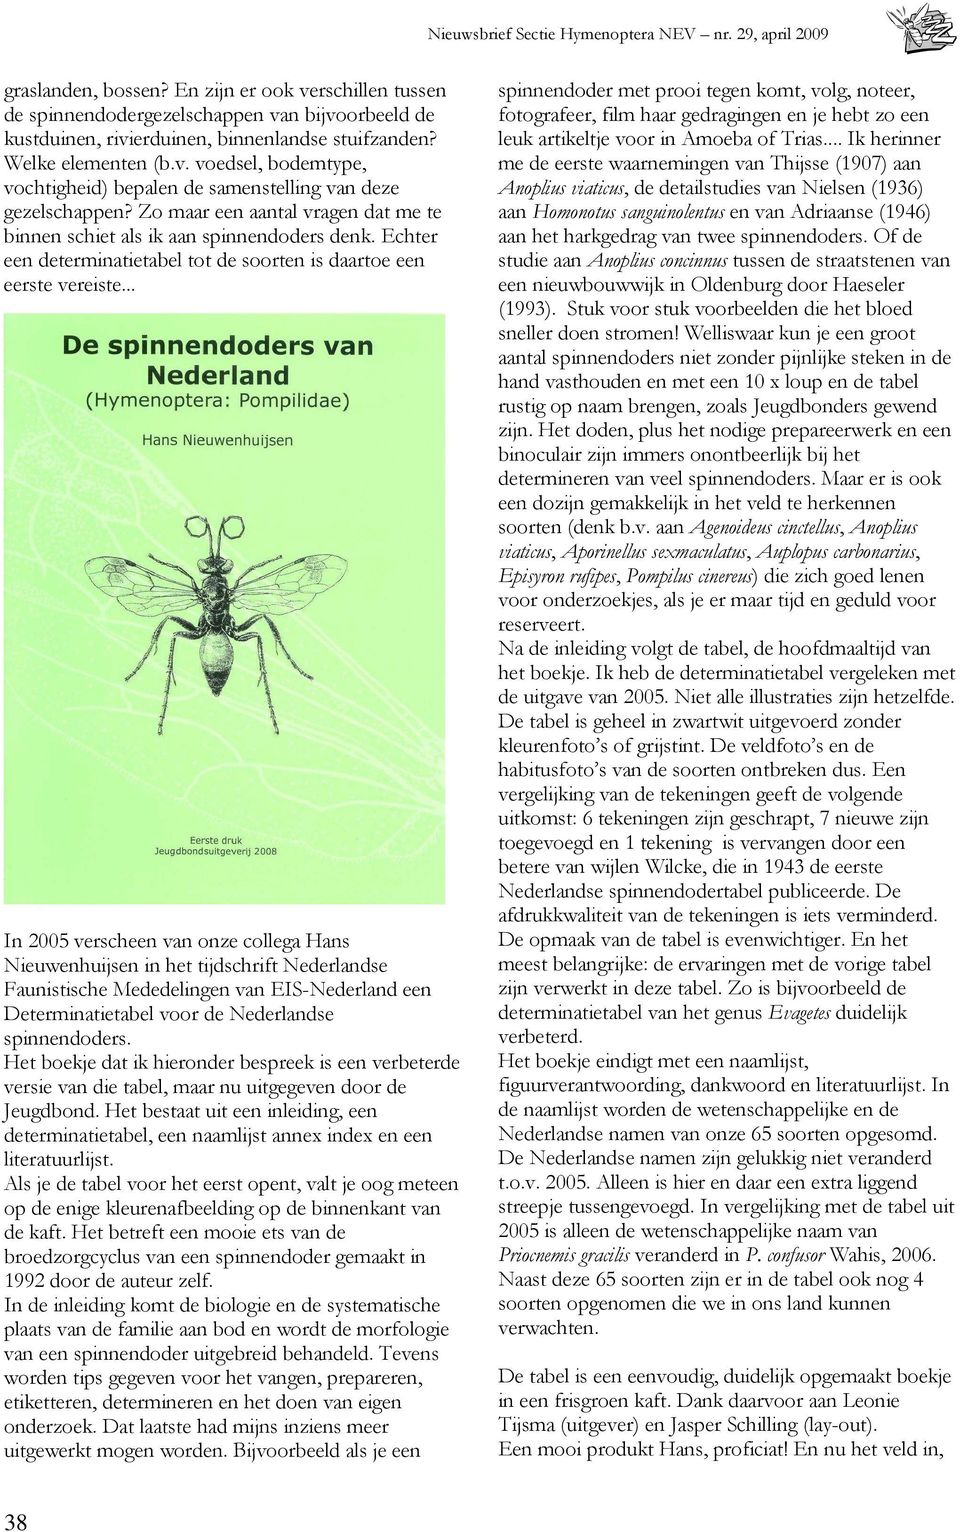 .. In 2005 verscheen van onze collega Hans Nieuwenhuijsen in het tijdschrift Nederlandse Faunistische Mededelingen van EIS-Nederland een Determinatietabel voor de Nederlandse spinnendoders.